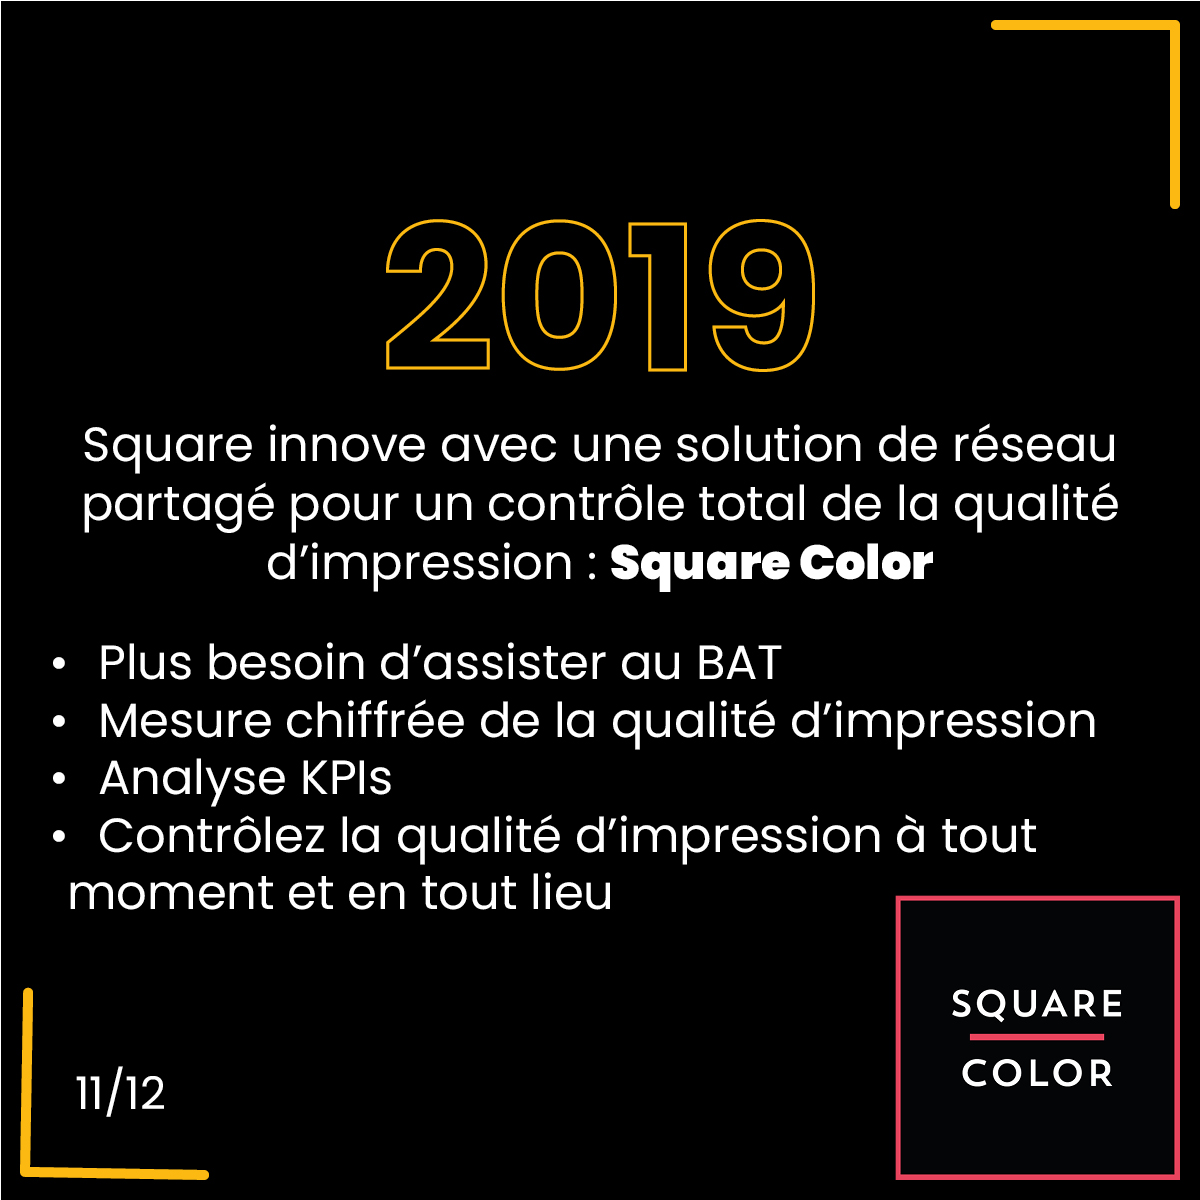 2019, Square innove avec une solution de réseau partagé pour un contrôle total de la qualité d’impression : Square Color. Plus besoin d’assister au BAT, Mesure chiffrée de la qualité d’impression, Analyse KPIs, Contrôlez la qualité d’impression à tout moment et en tout lieu